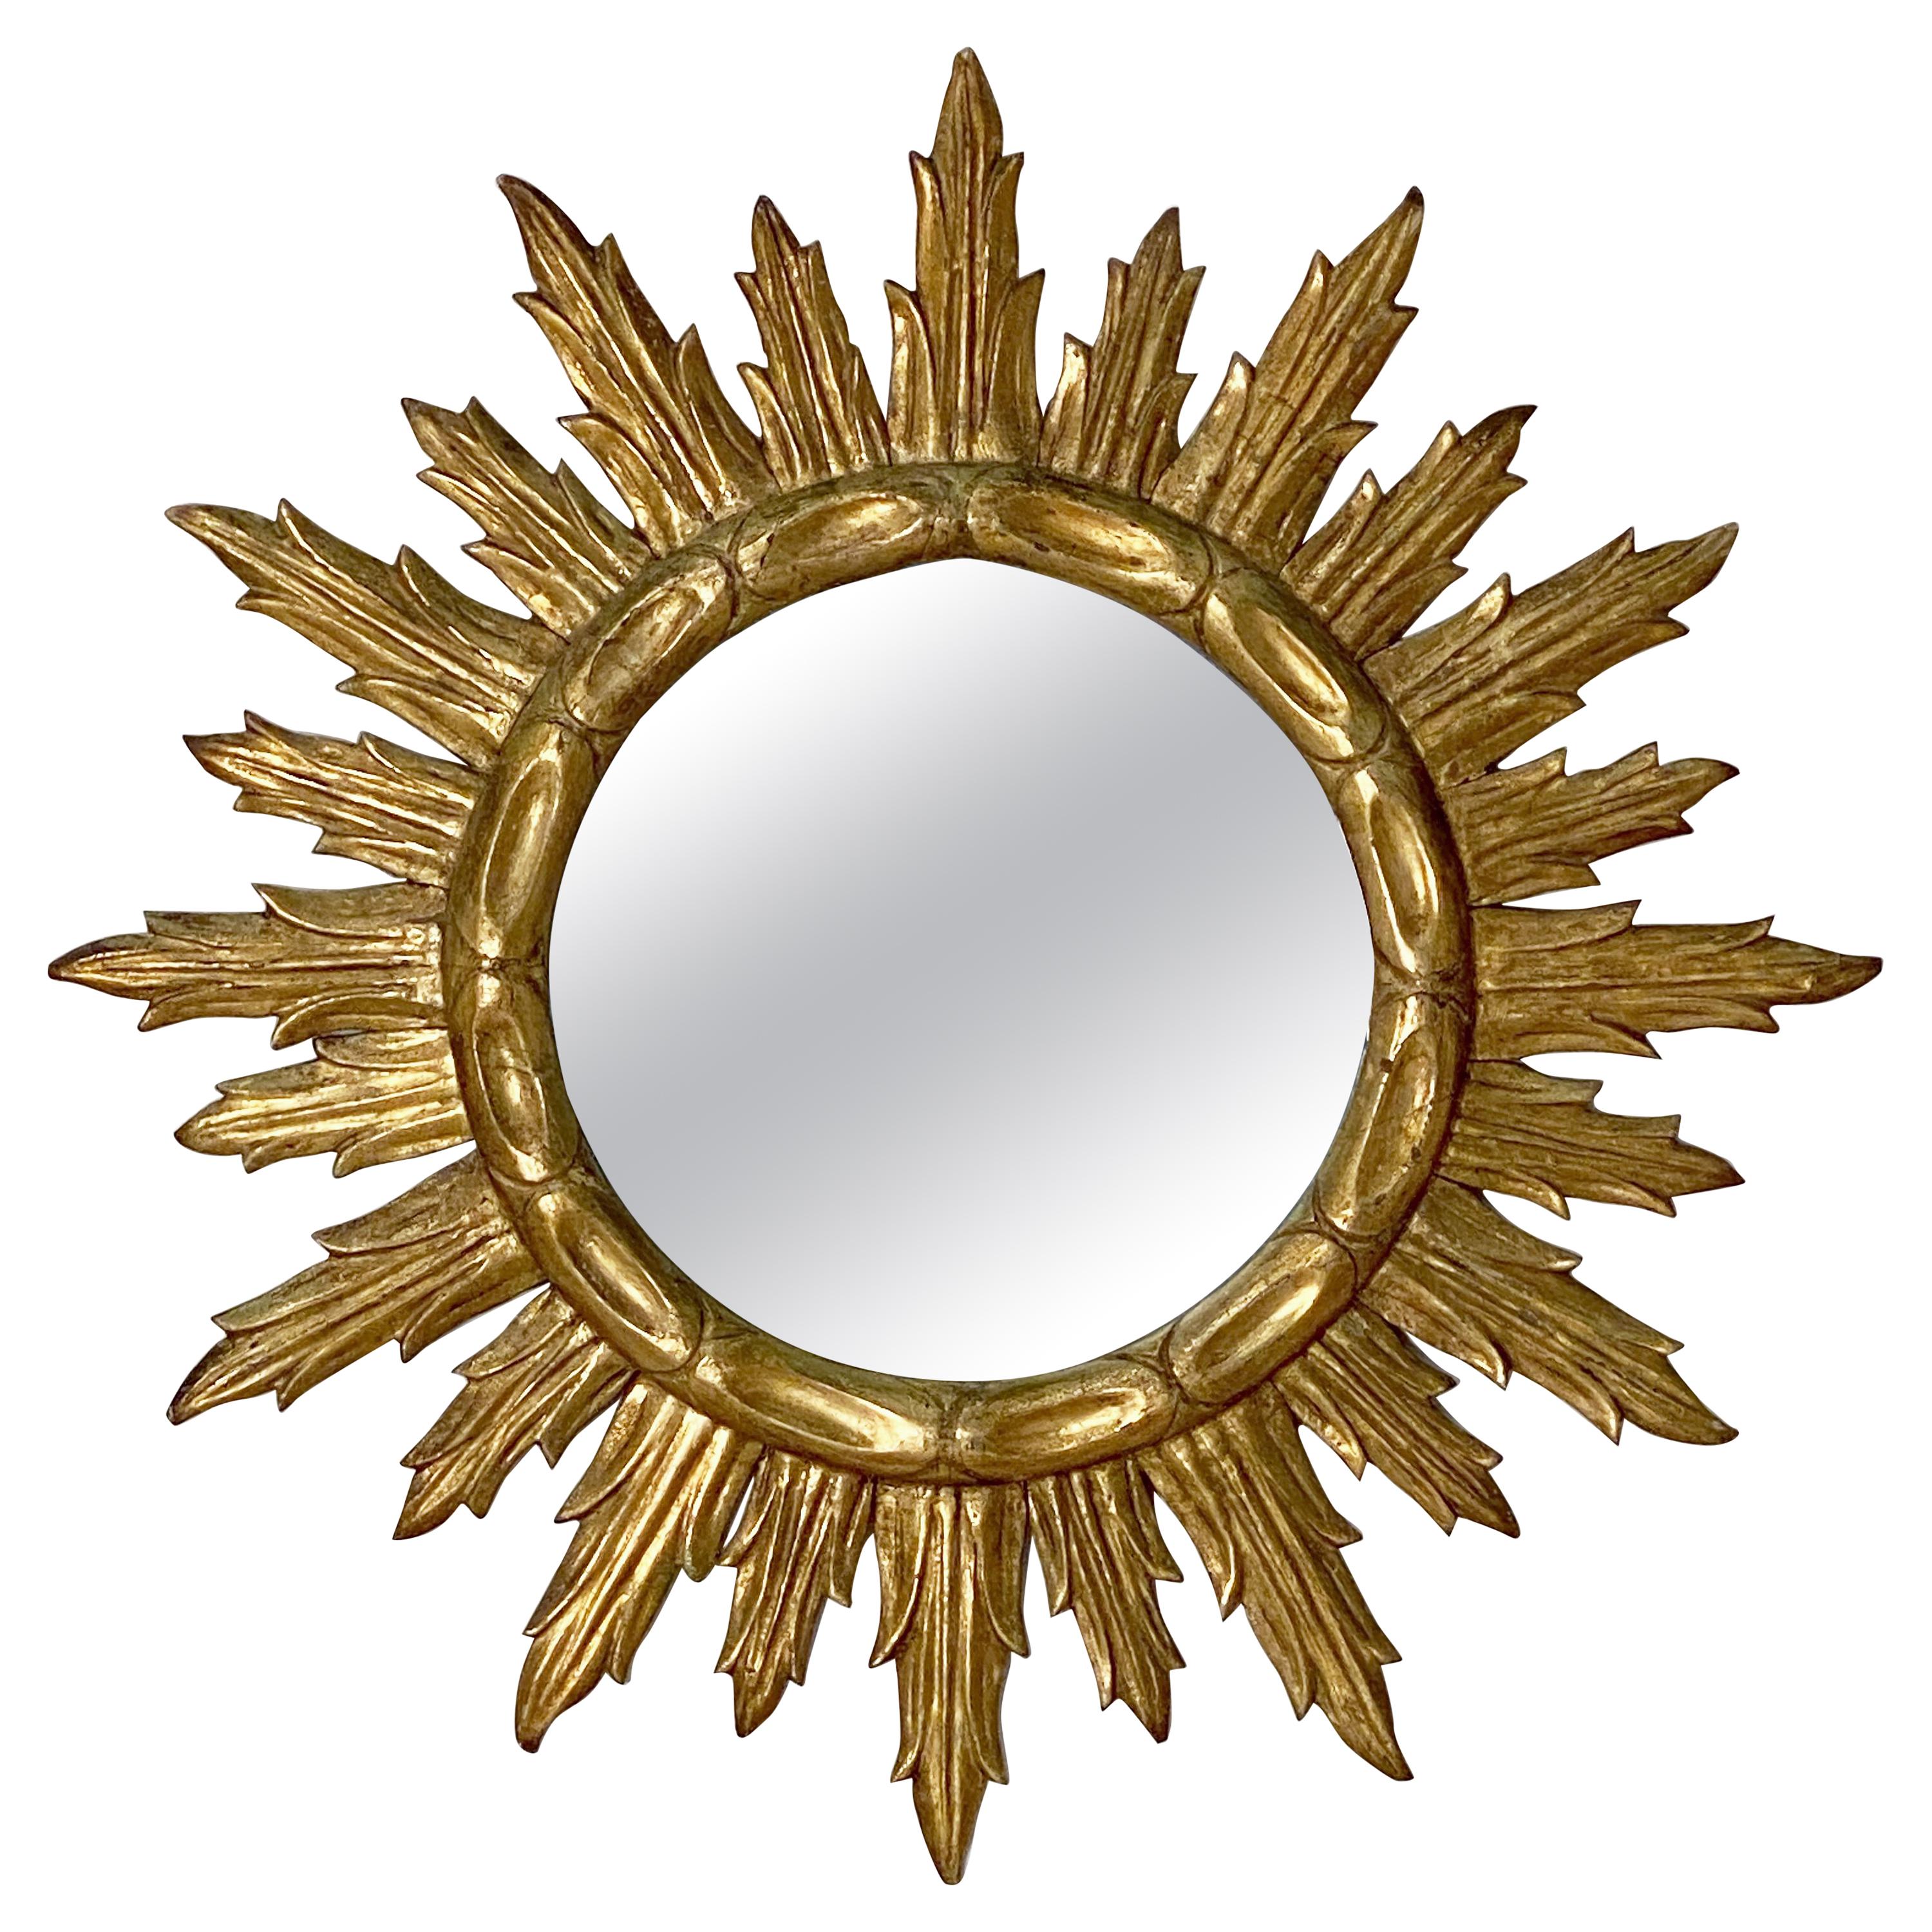 Large French Gilt Sunburst or Starburst Mirror (Diameter 32 1/4)